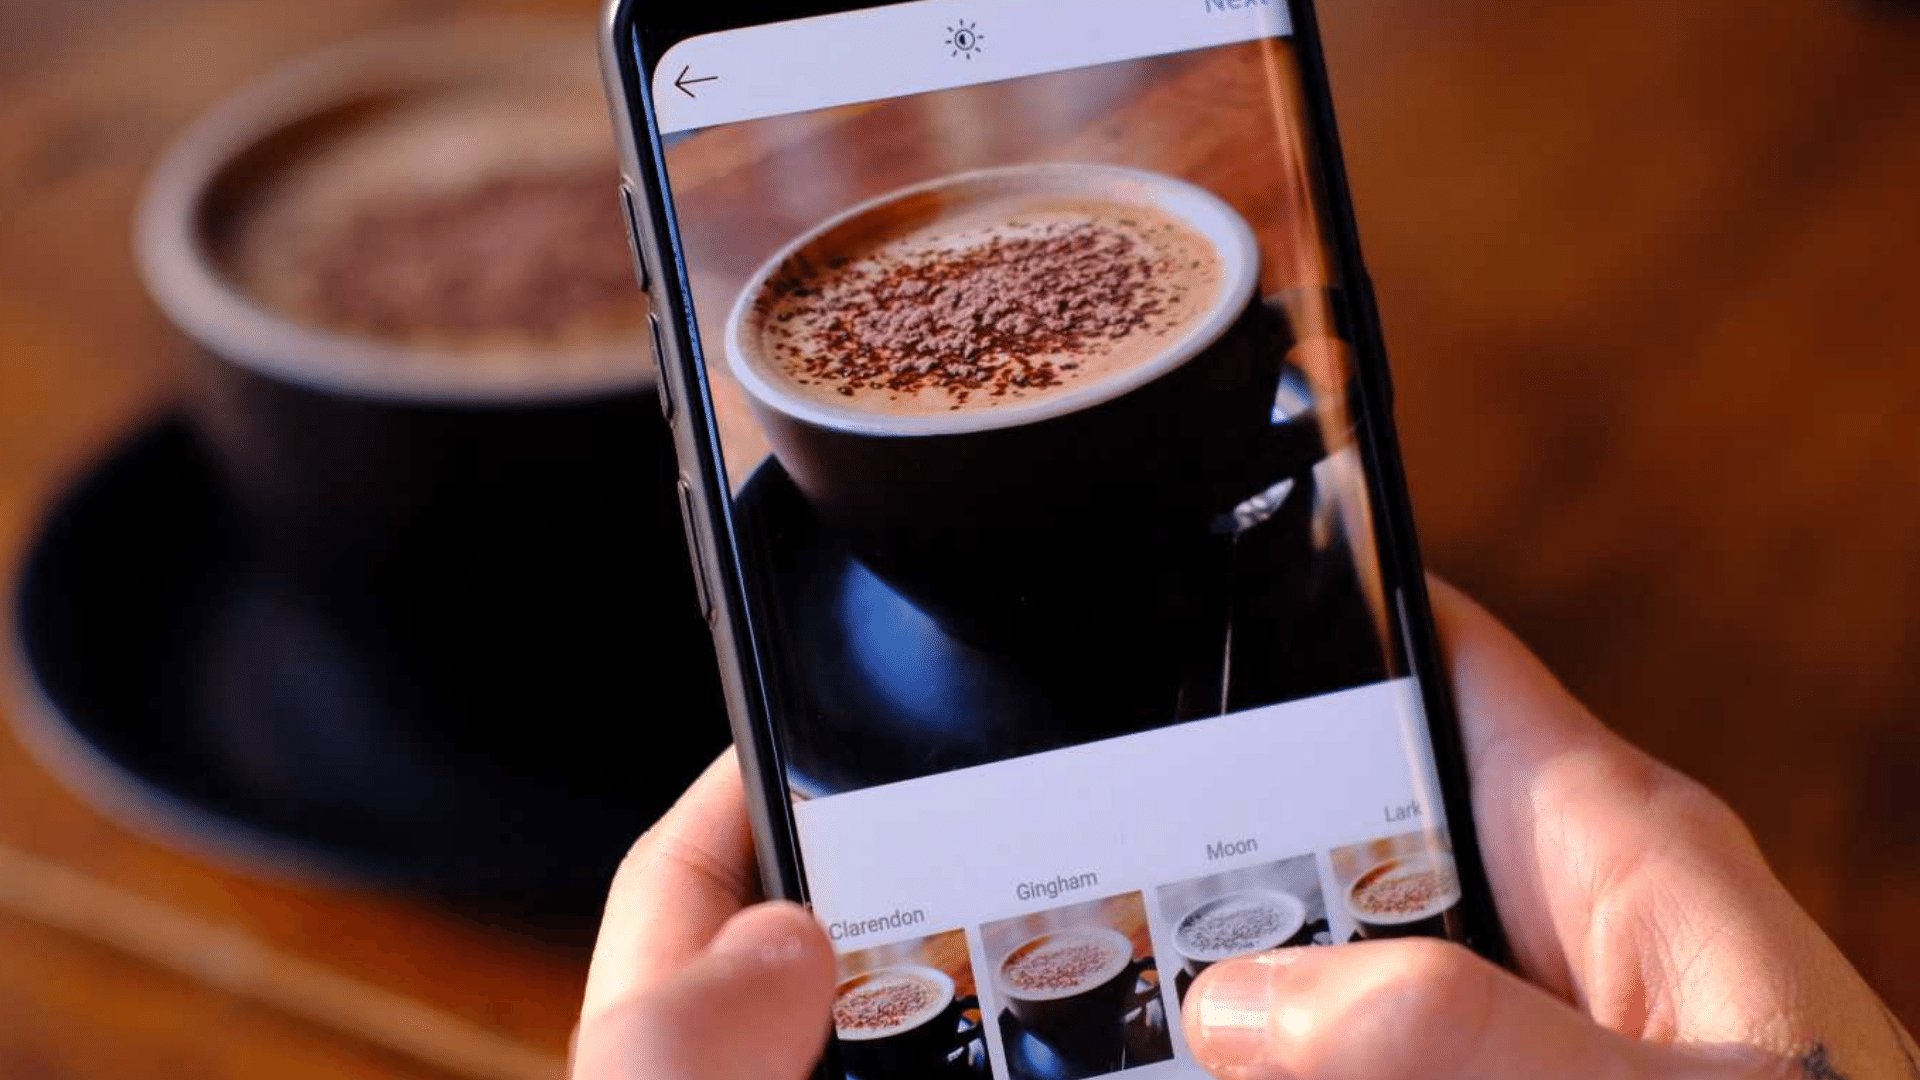 Pessoa editando no instagram uma foto de uma xícara de café que está na sua frente em cima da mesa